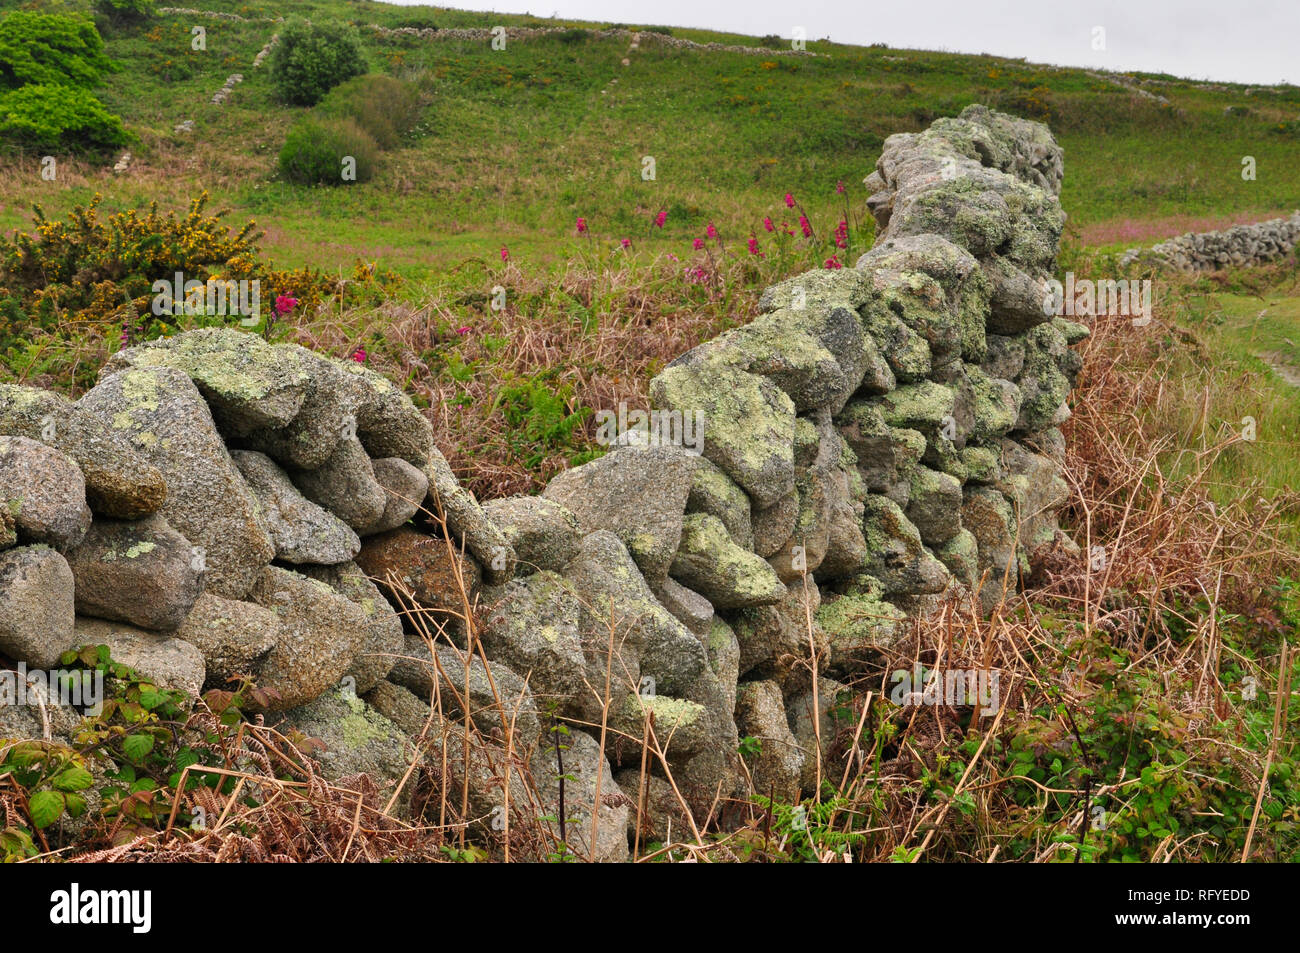 Grandi massi di granito creano un muro grezzo ricoperto da muschi e licheni sull'isola di St Martin's nelle isole Scilly,cornwall, Engalnd,UK. Foto Stock